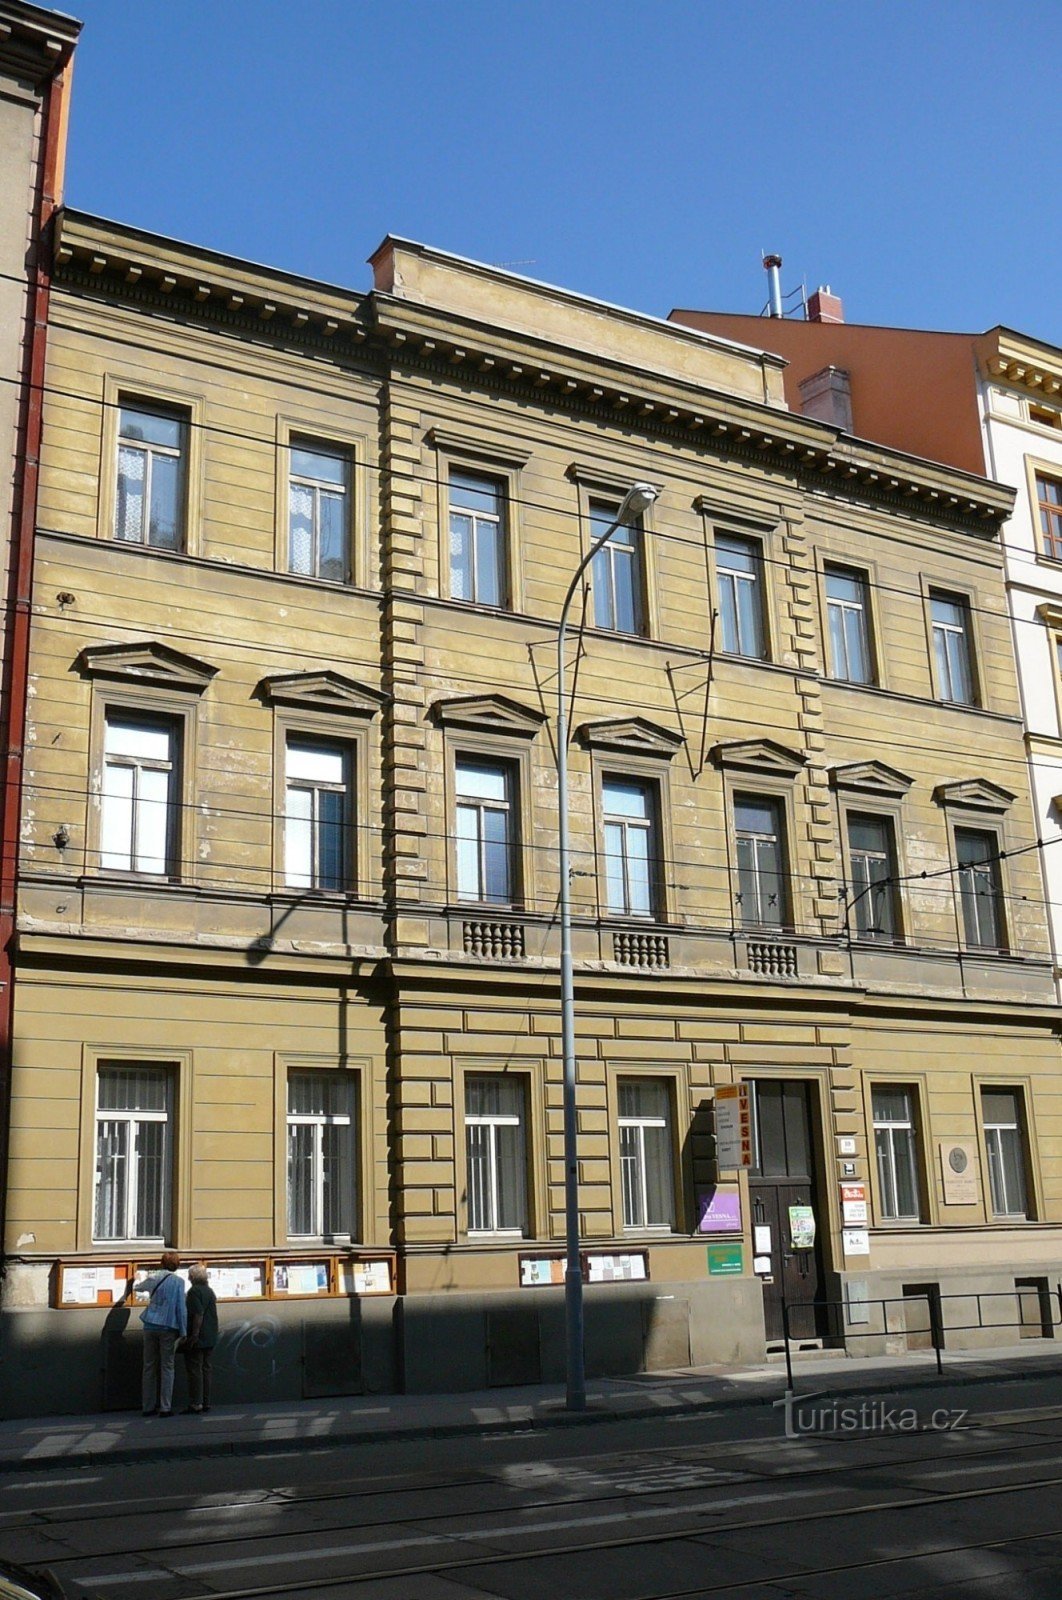 La casa en Údolní 10, donde todavía reside la asociación Vesna y la habitación de Jurkovič se pueden ver aquí